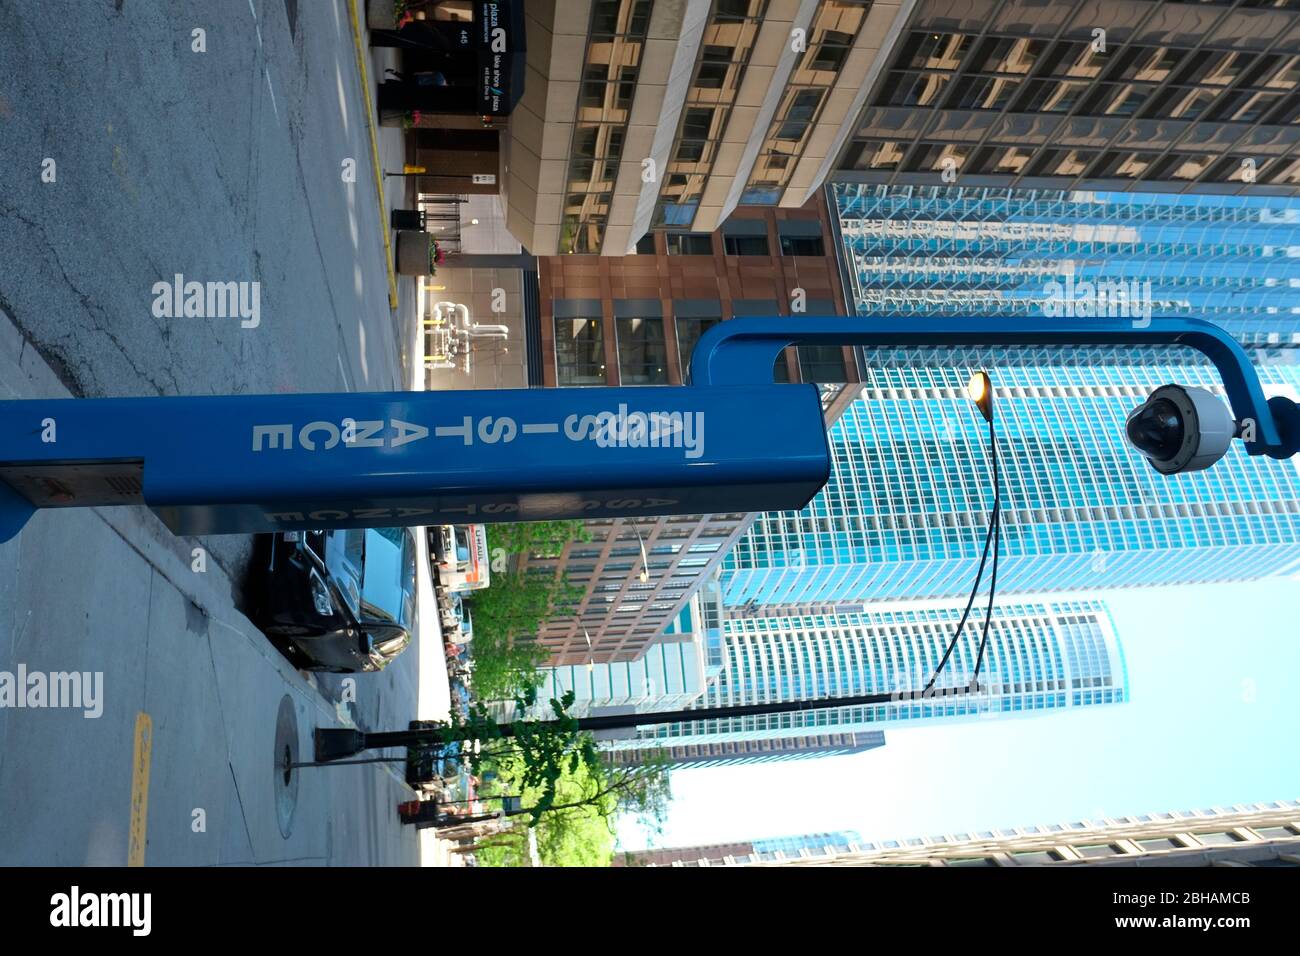 Dispositivo de comunicación de emergencia con cámara. Centro de Chicago, Illinois. Foto de stock